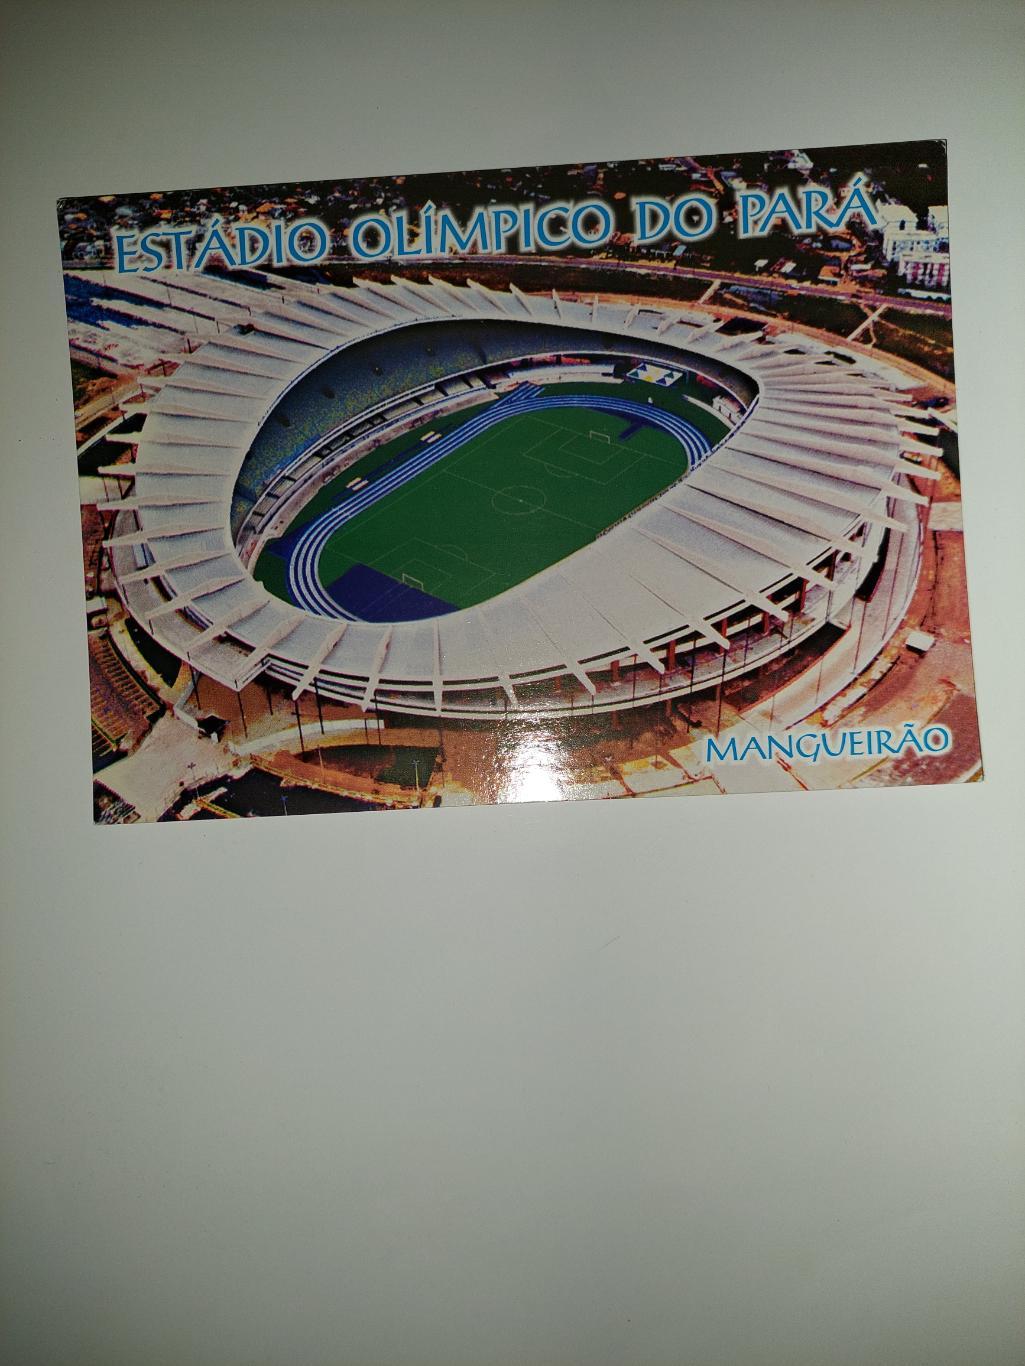 Олимпийсеий стадион.Парана.Бразилия